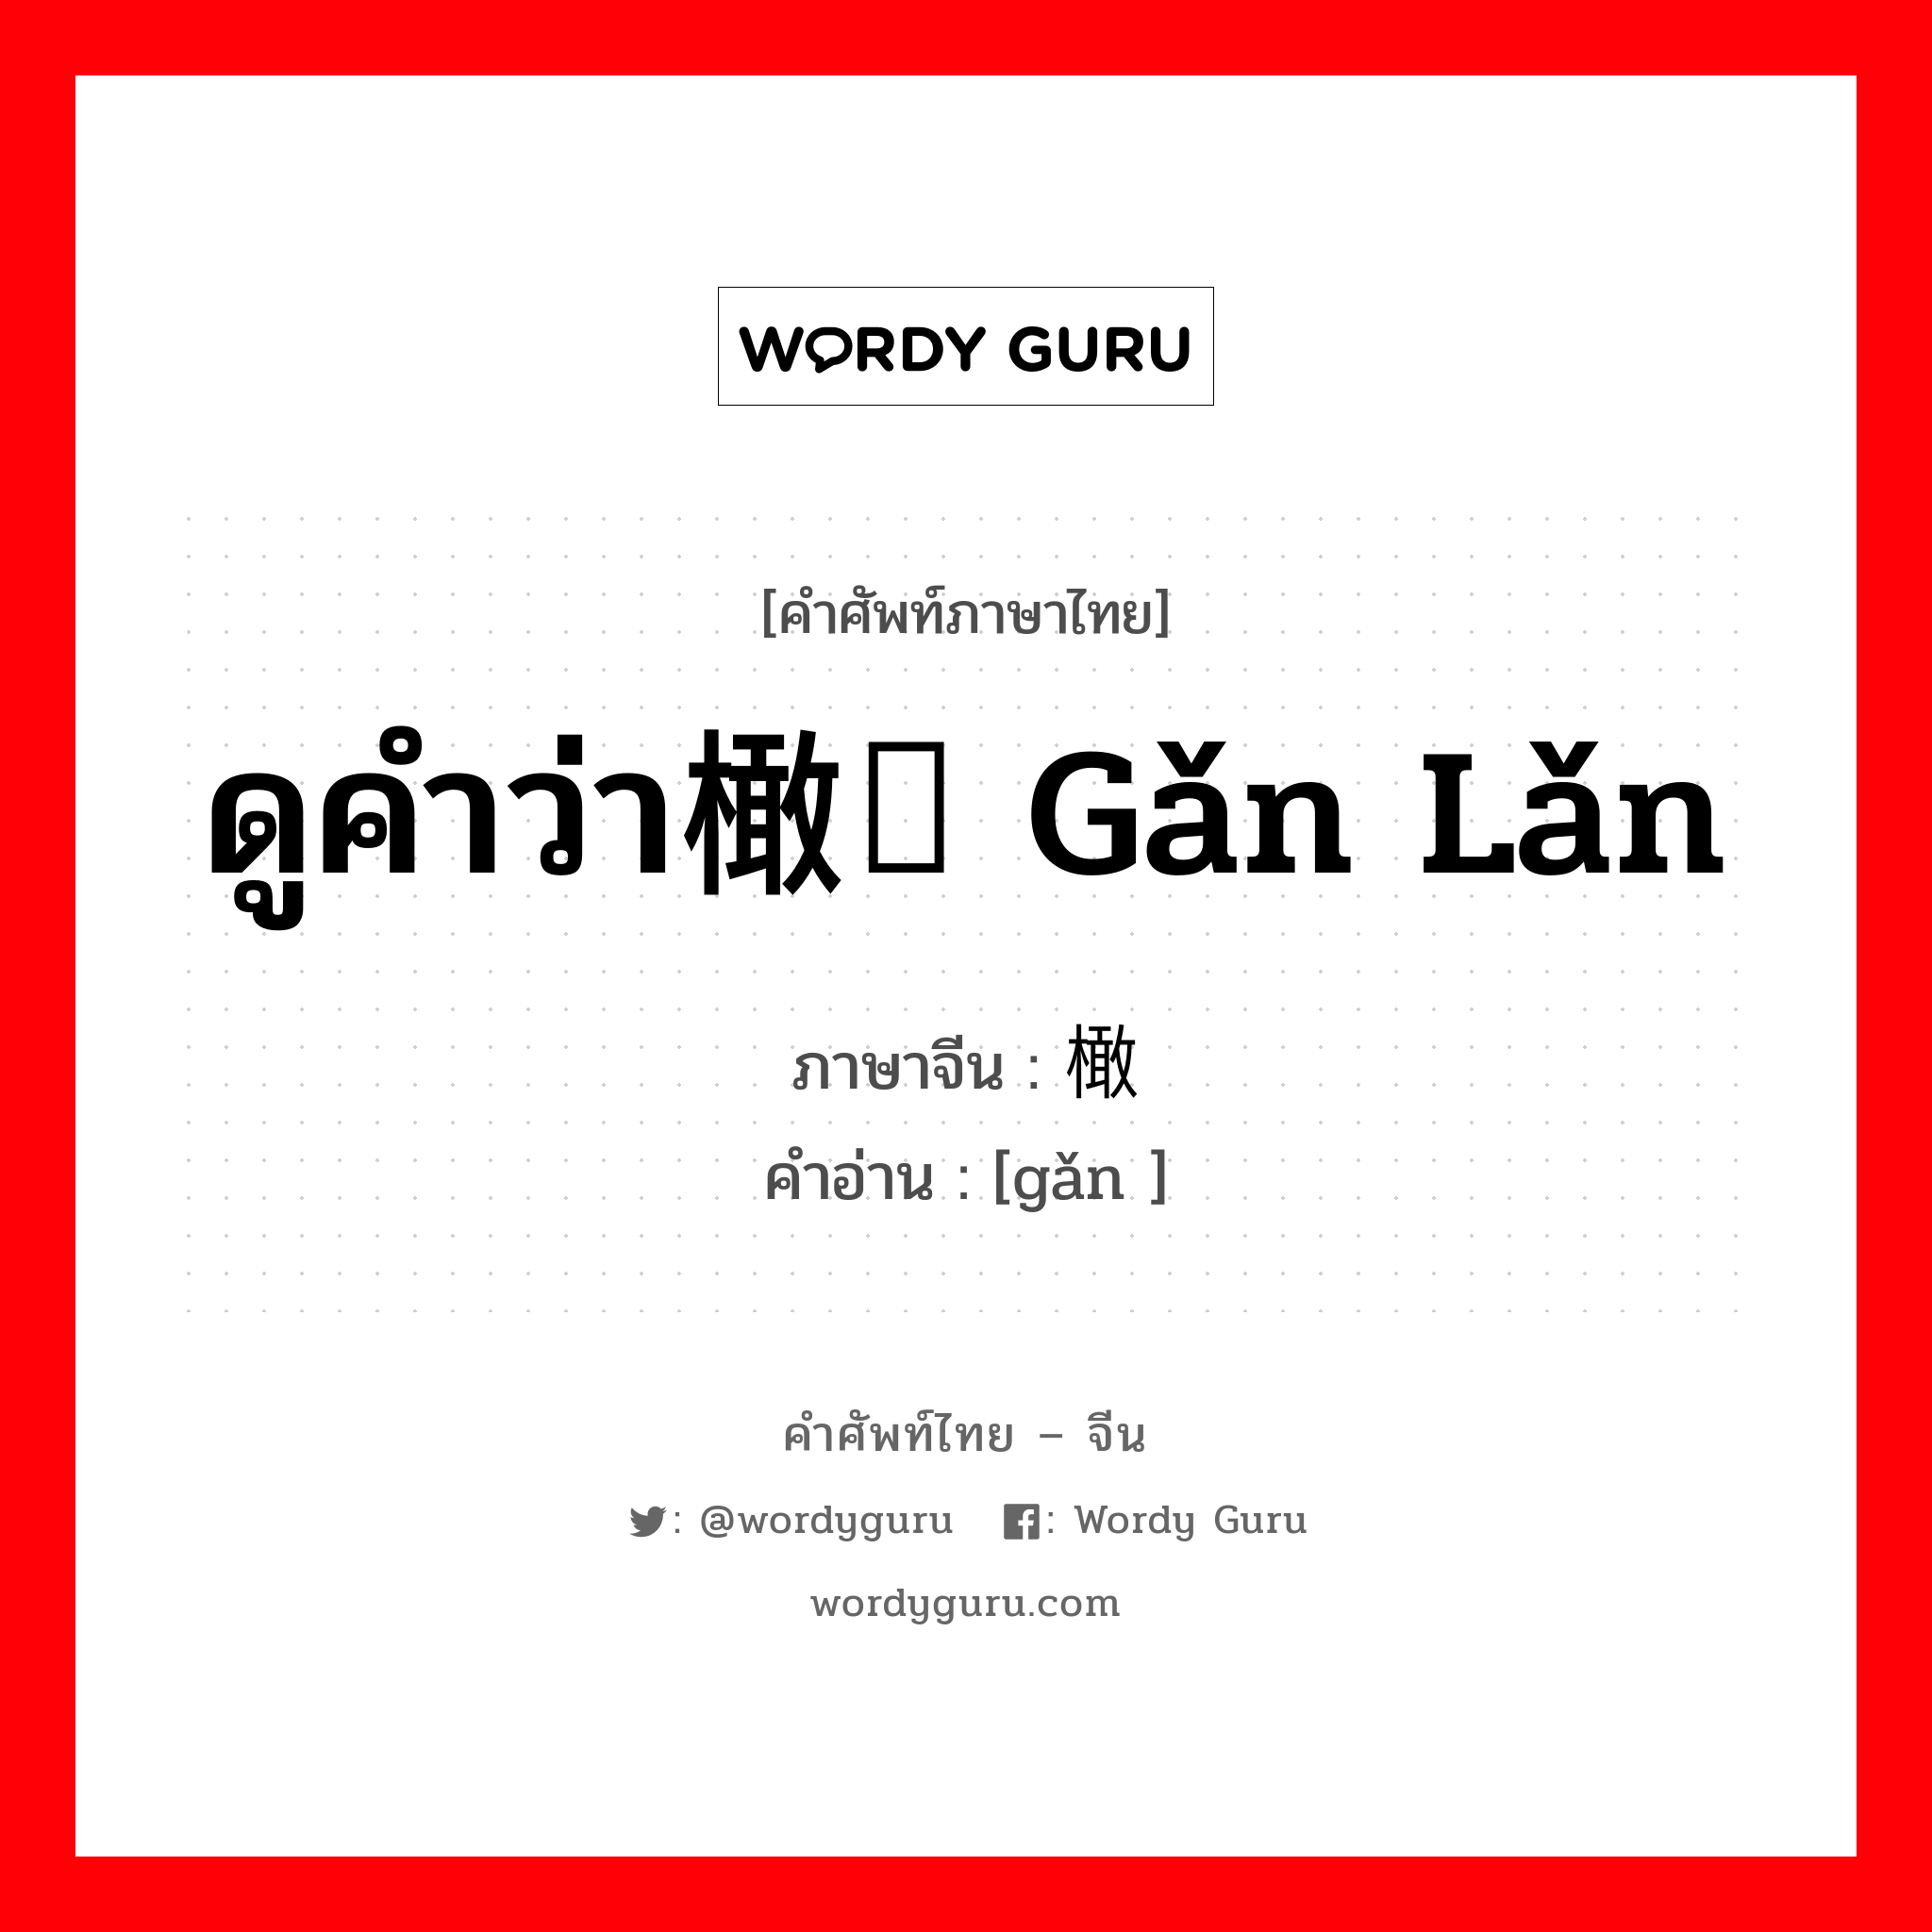 ดูคำว่า橄榄 gǎn lǎn ภาษาจีนคืออะไร, คำศัพท์ภาษาไทย - จีน ดูคำว่า橄榄 gǎn lǎn ภาษาจีน 橄 คำอ่าน [gǎn ]